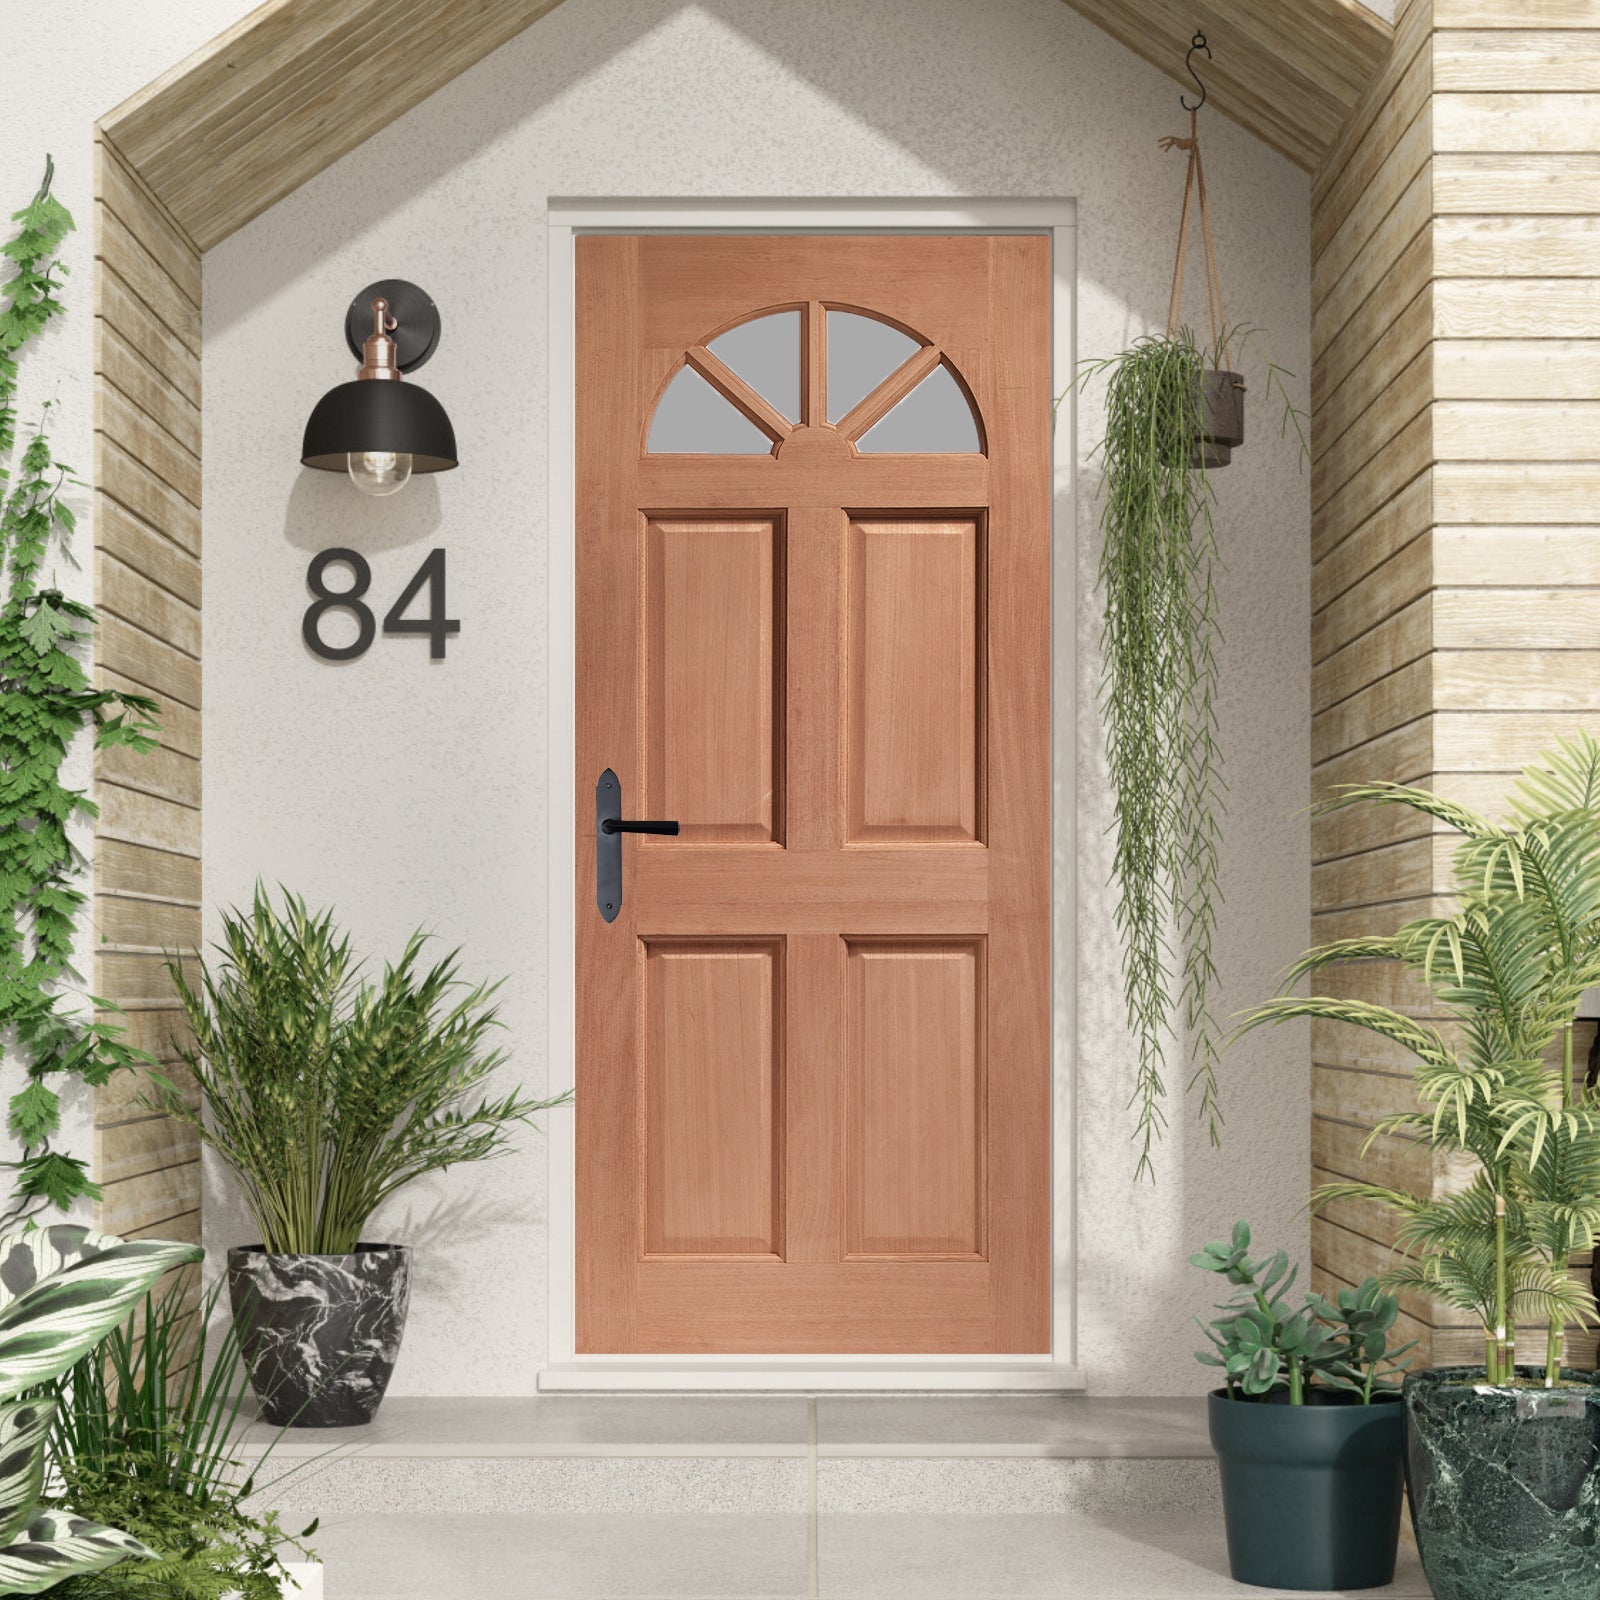 SHOW External Hardwood Carolina Door with Single Clear Glass lifestyle